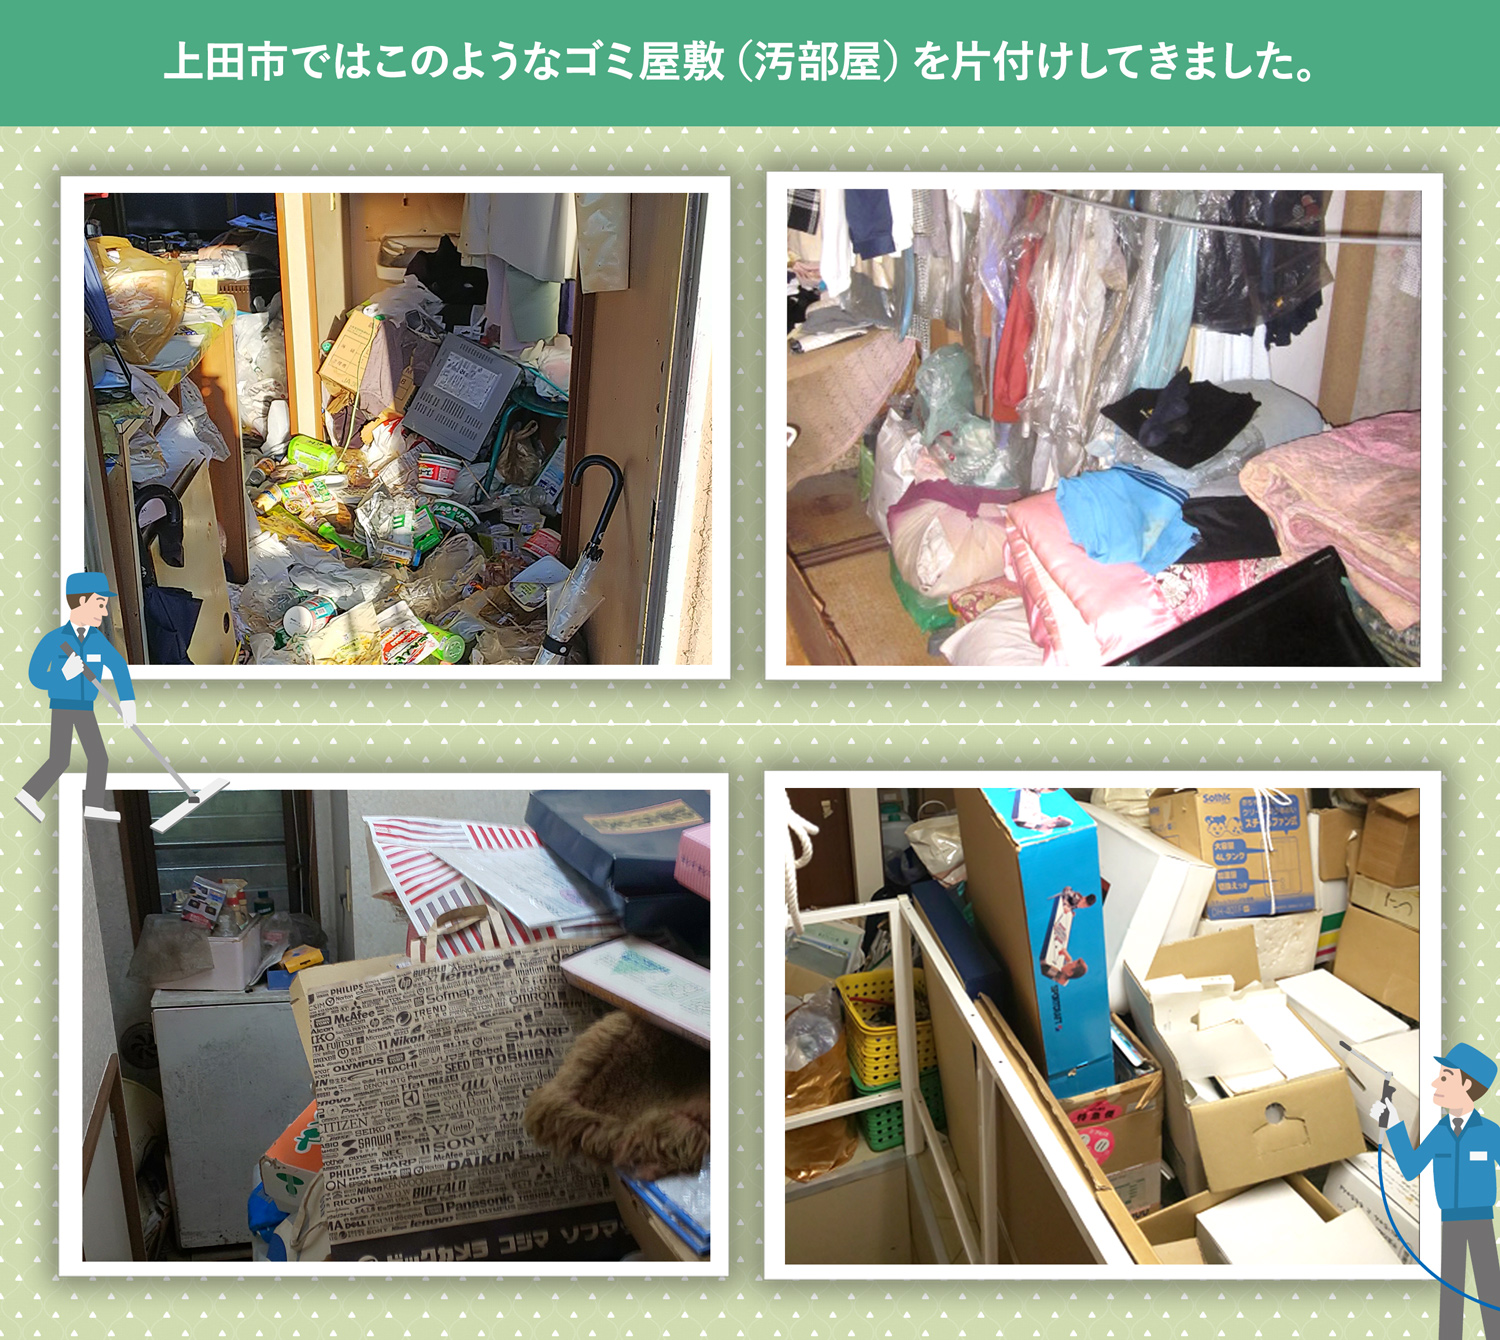 上田市で行ったで行ったごみ屋敷・汚部屋の片付けの一例